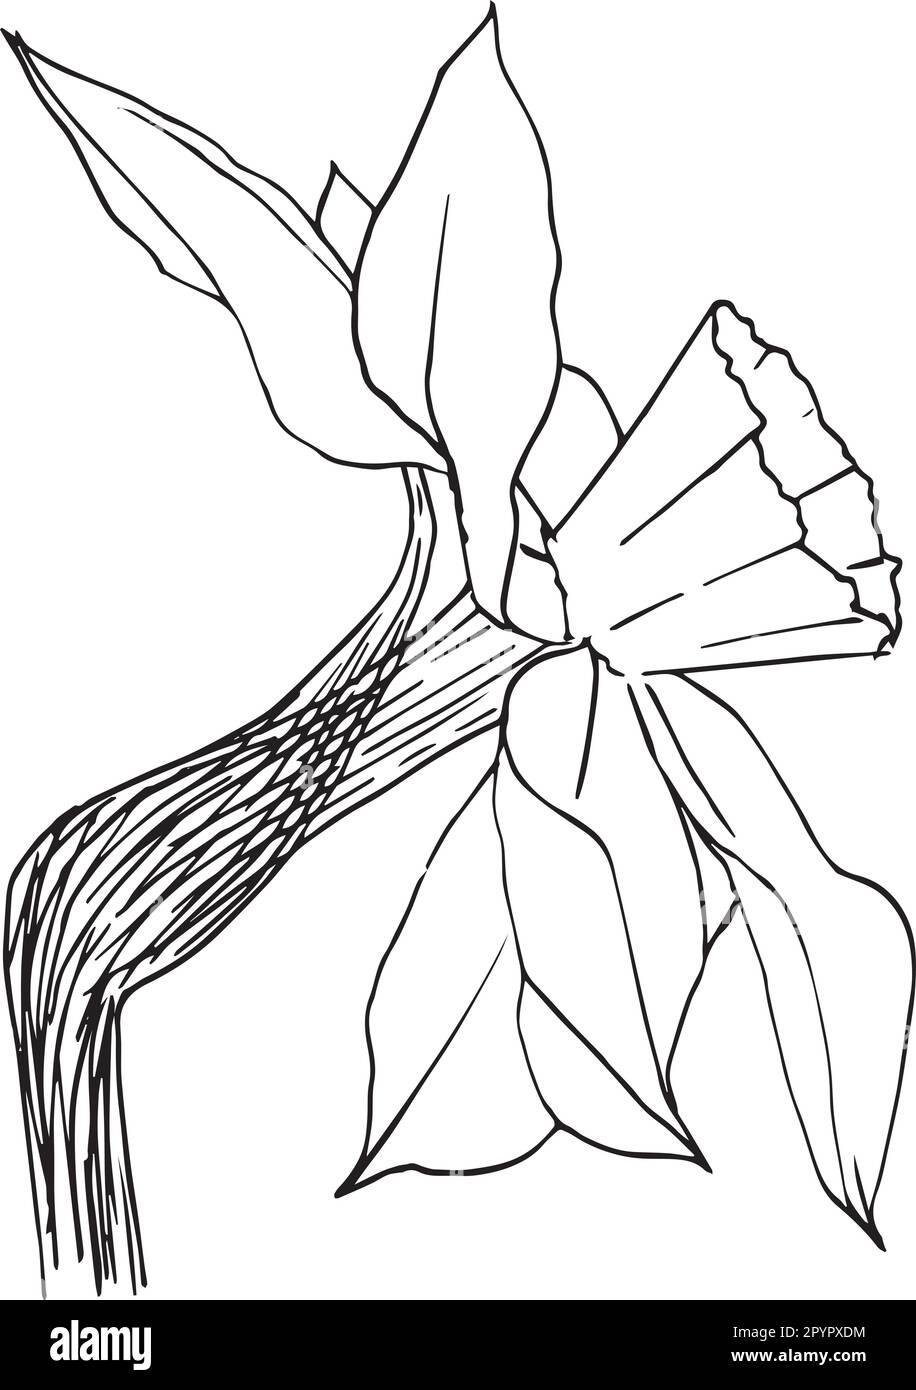 Illustration vectorielle d'une fleur de narcisse dans des graphiques à encre. Éléments graphiques d'un bourgeon de jonquille et de feuilles dans différentes positions. Jeu clipart sans Illustration de Vecteur